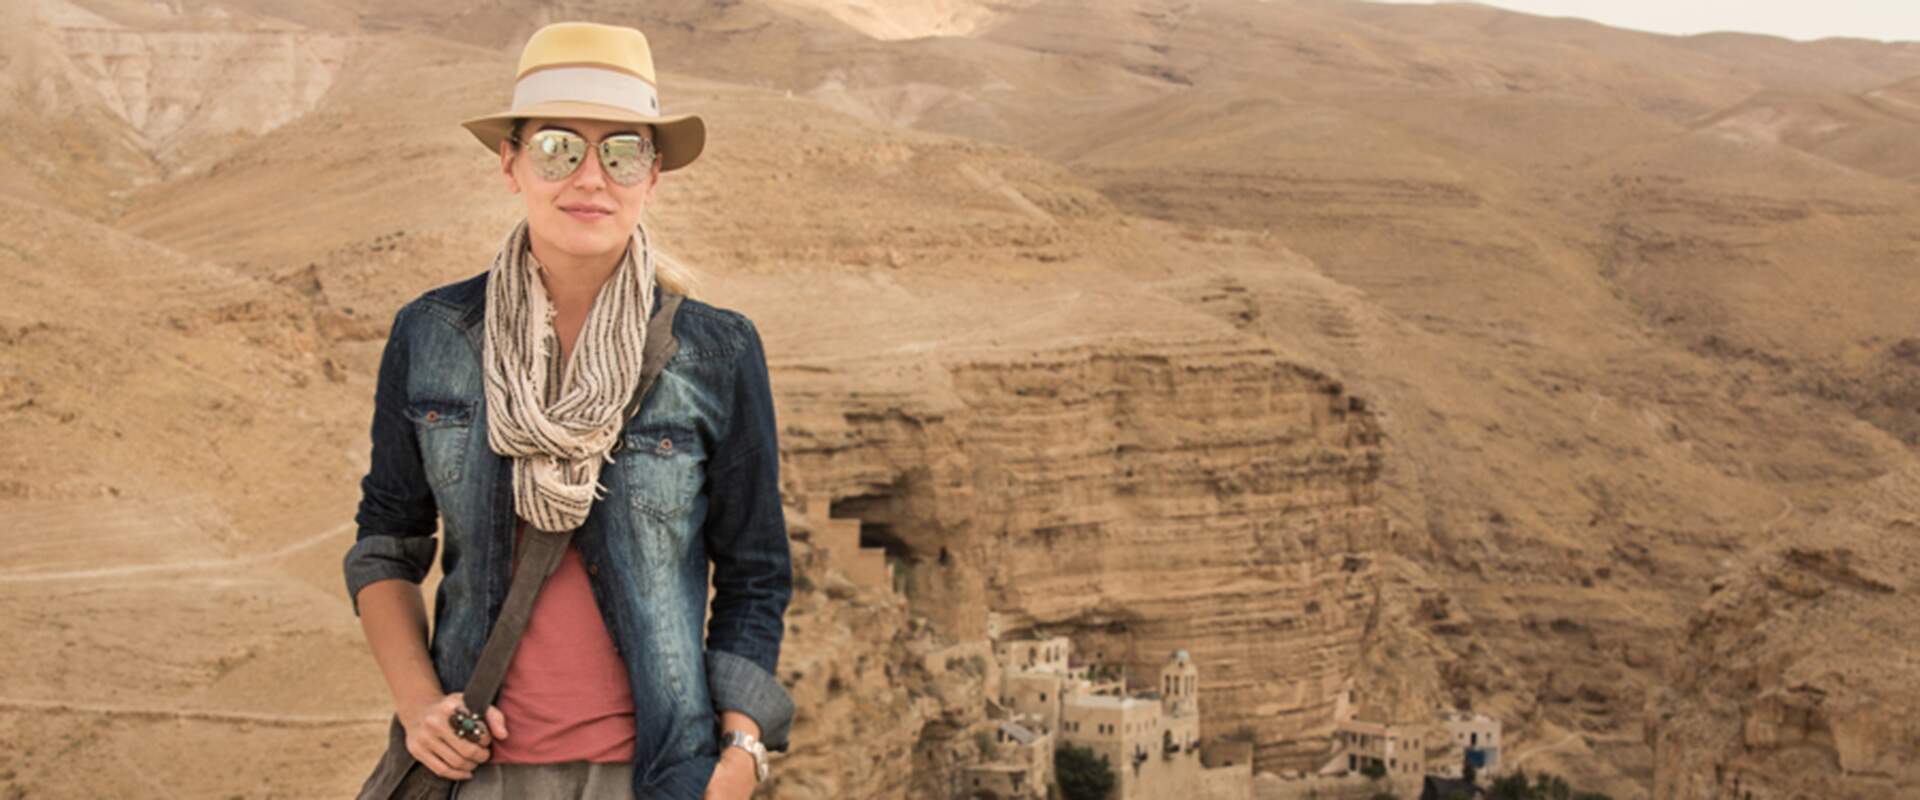 Um dos destaques desse lugar é o sítio arqueológico de Petra